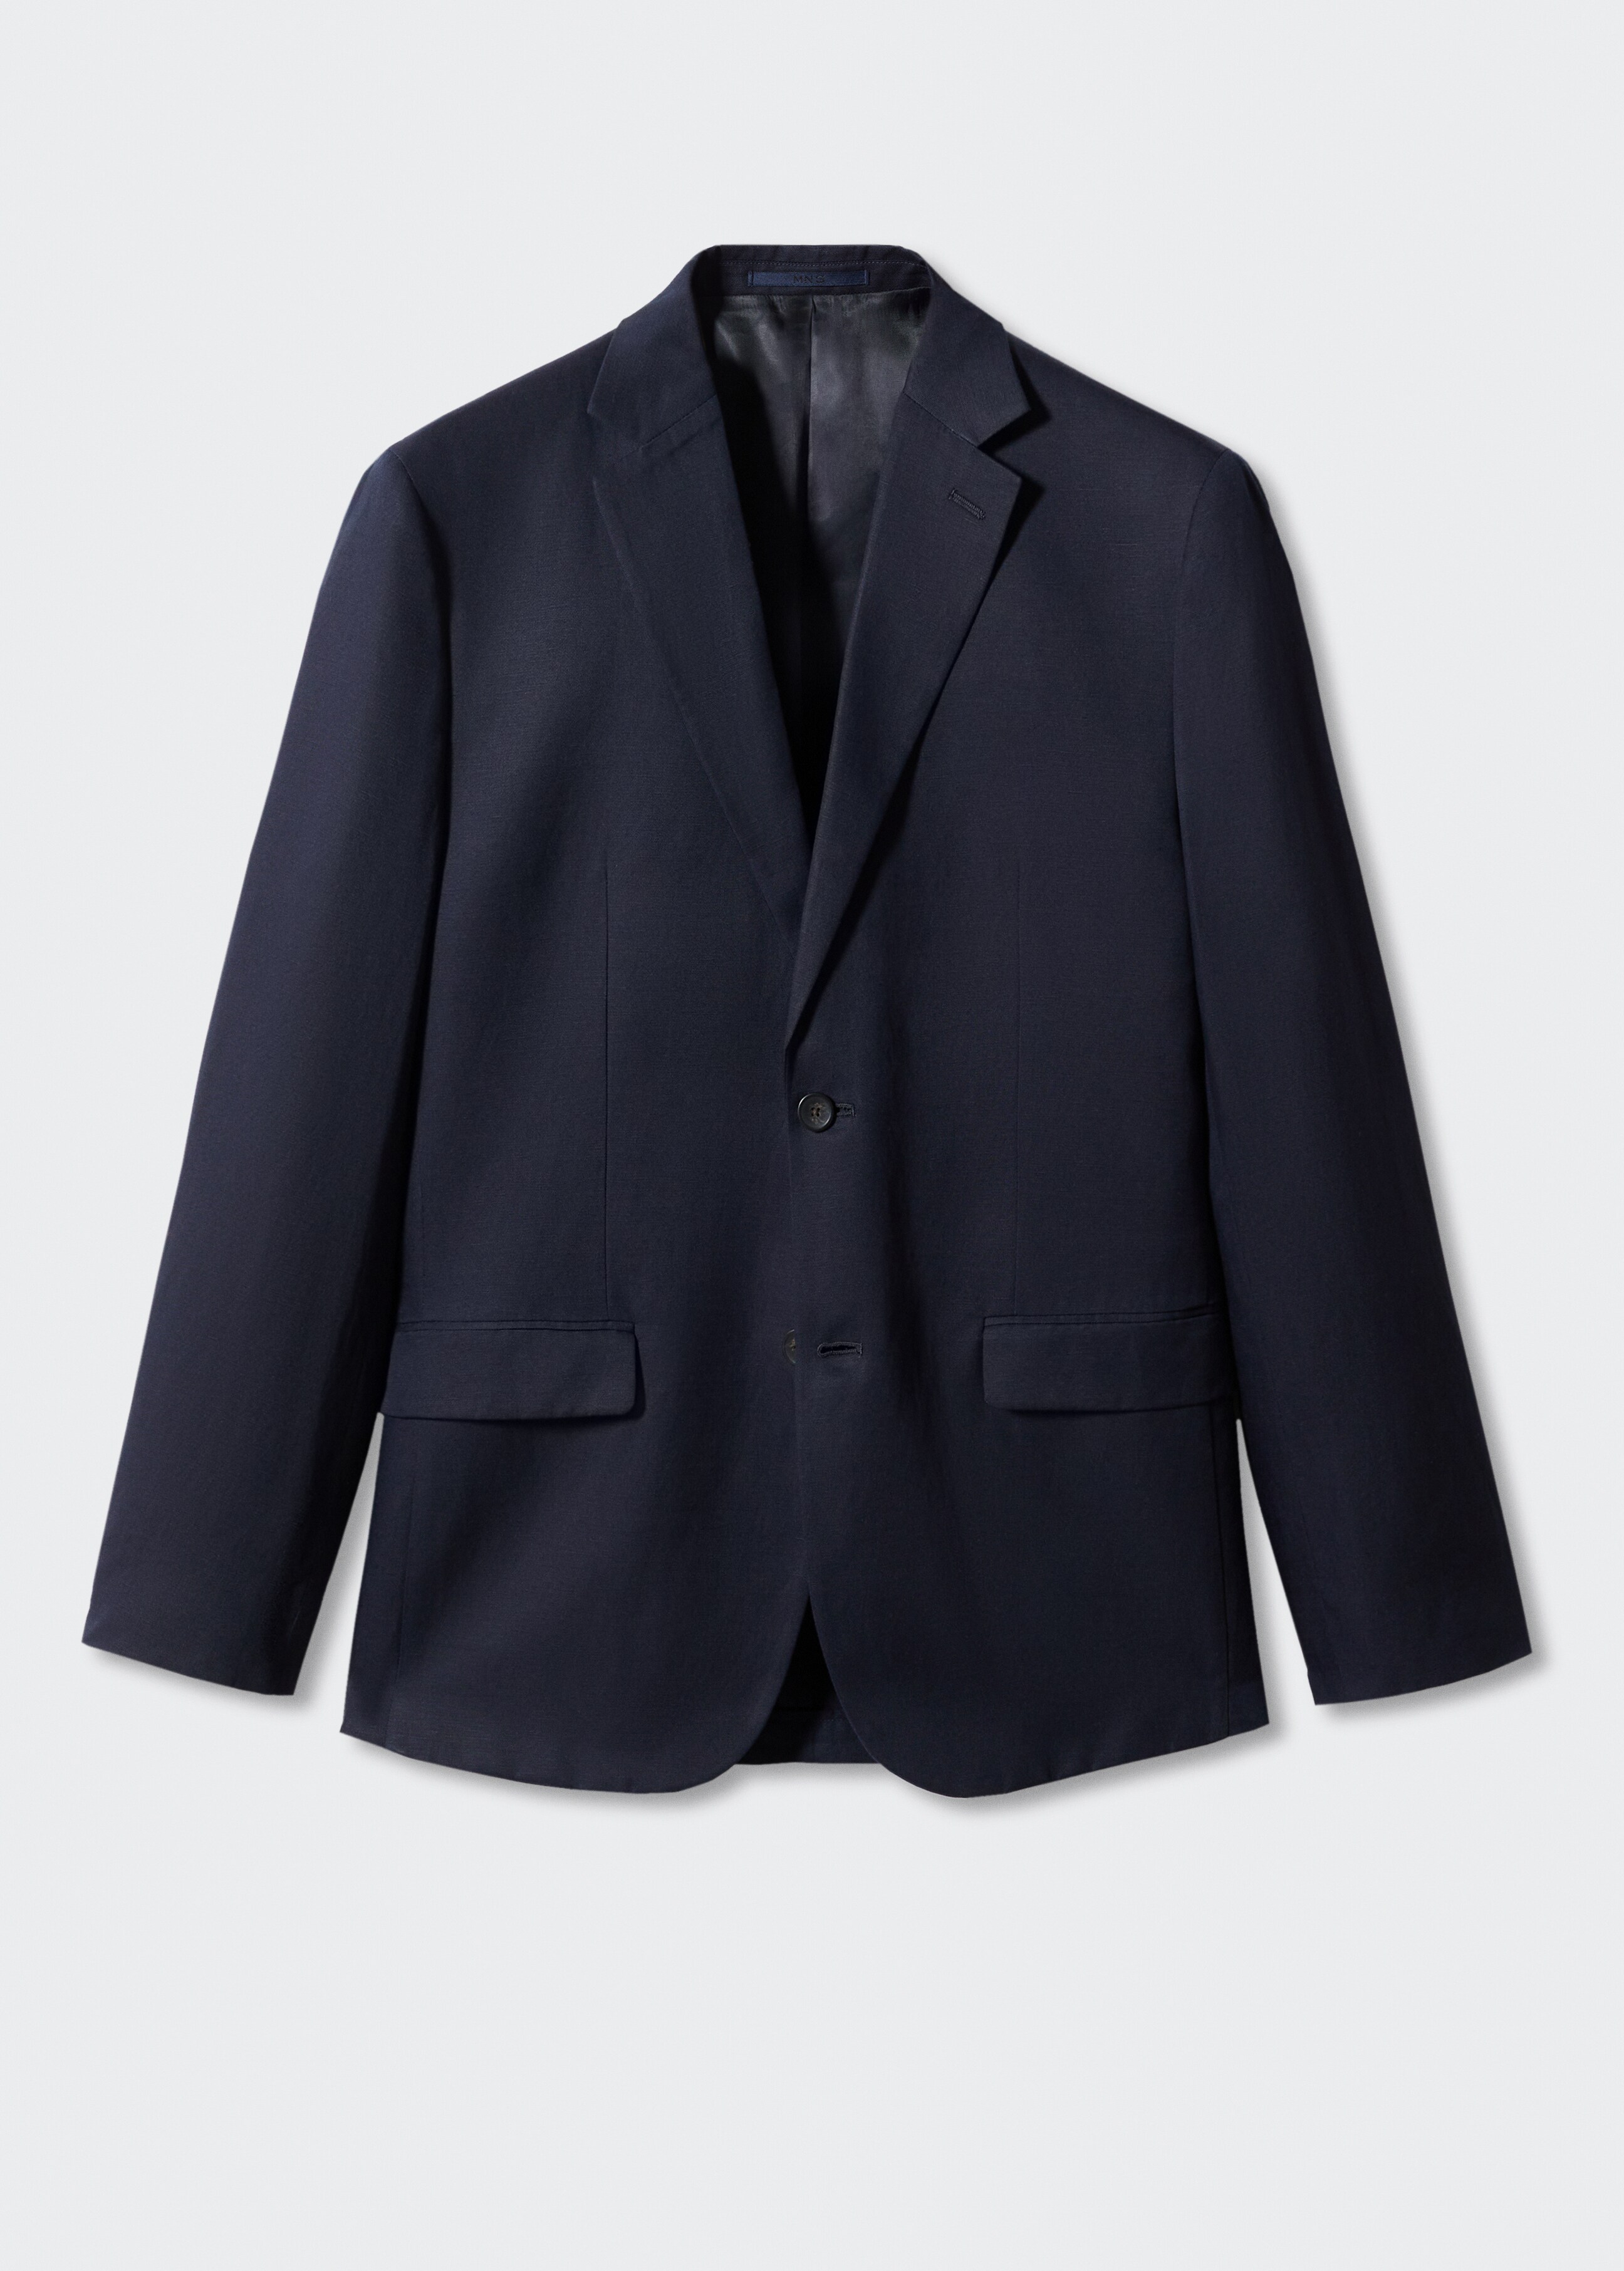 Slim fit linen suit blazer - Article without model